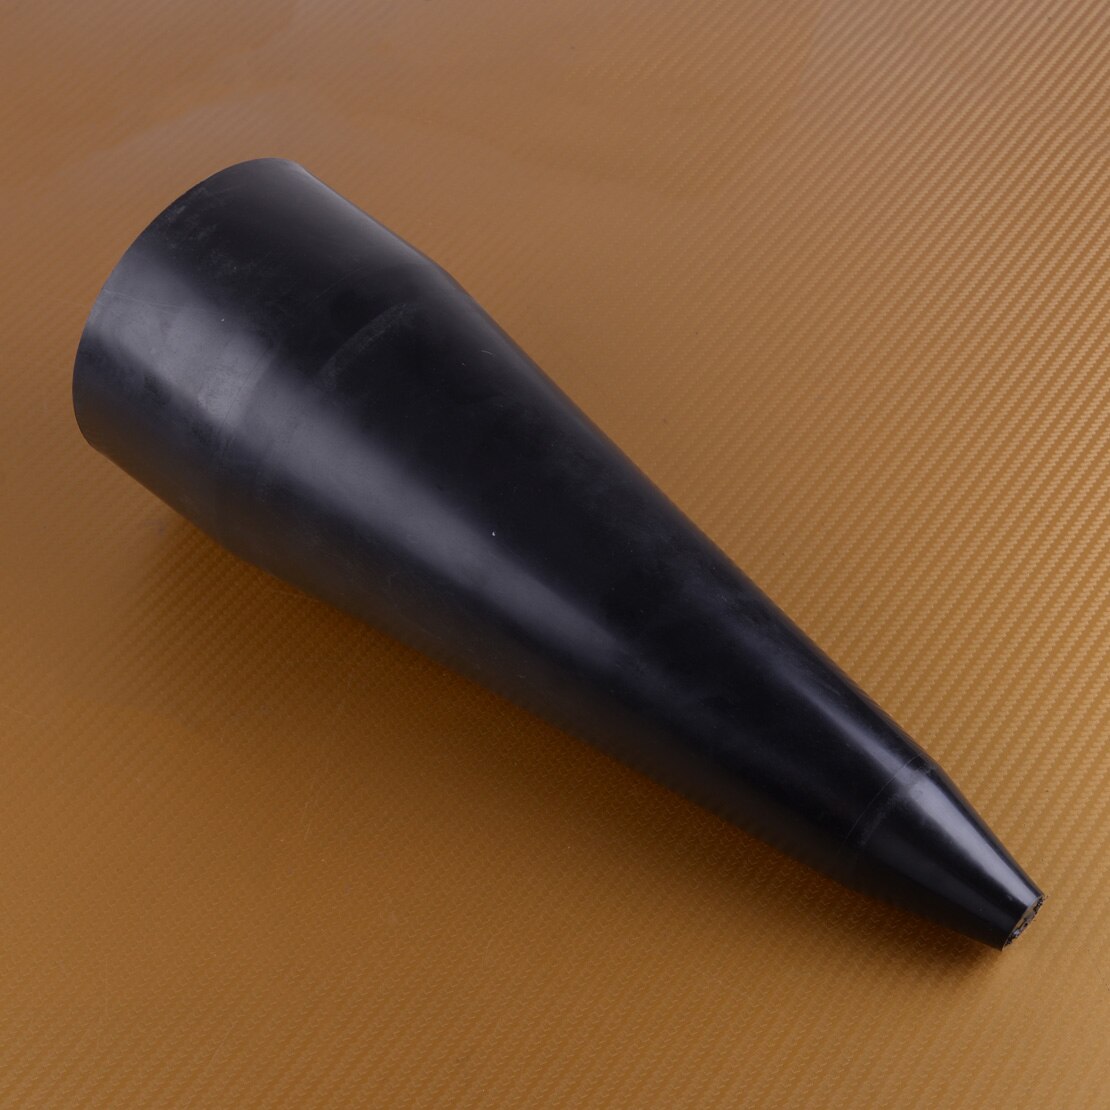 Abeler sort plastik stretch cv støvle kegle værktøj 32cm til universal montering stretchy cv støvle gamacher